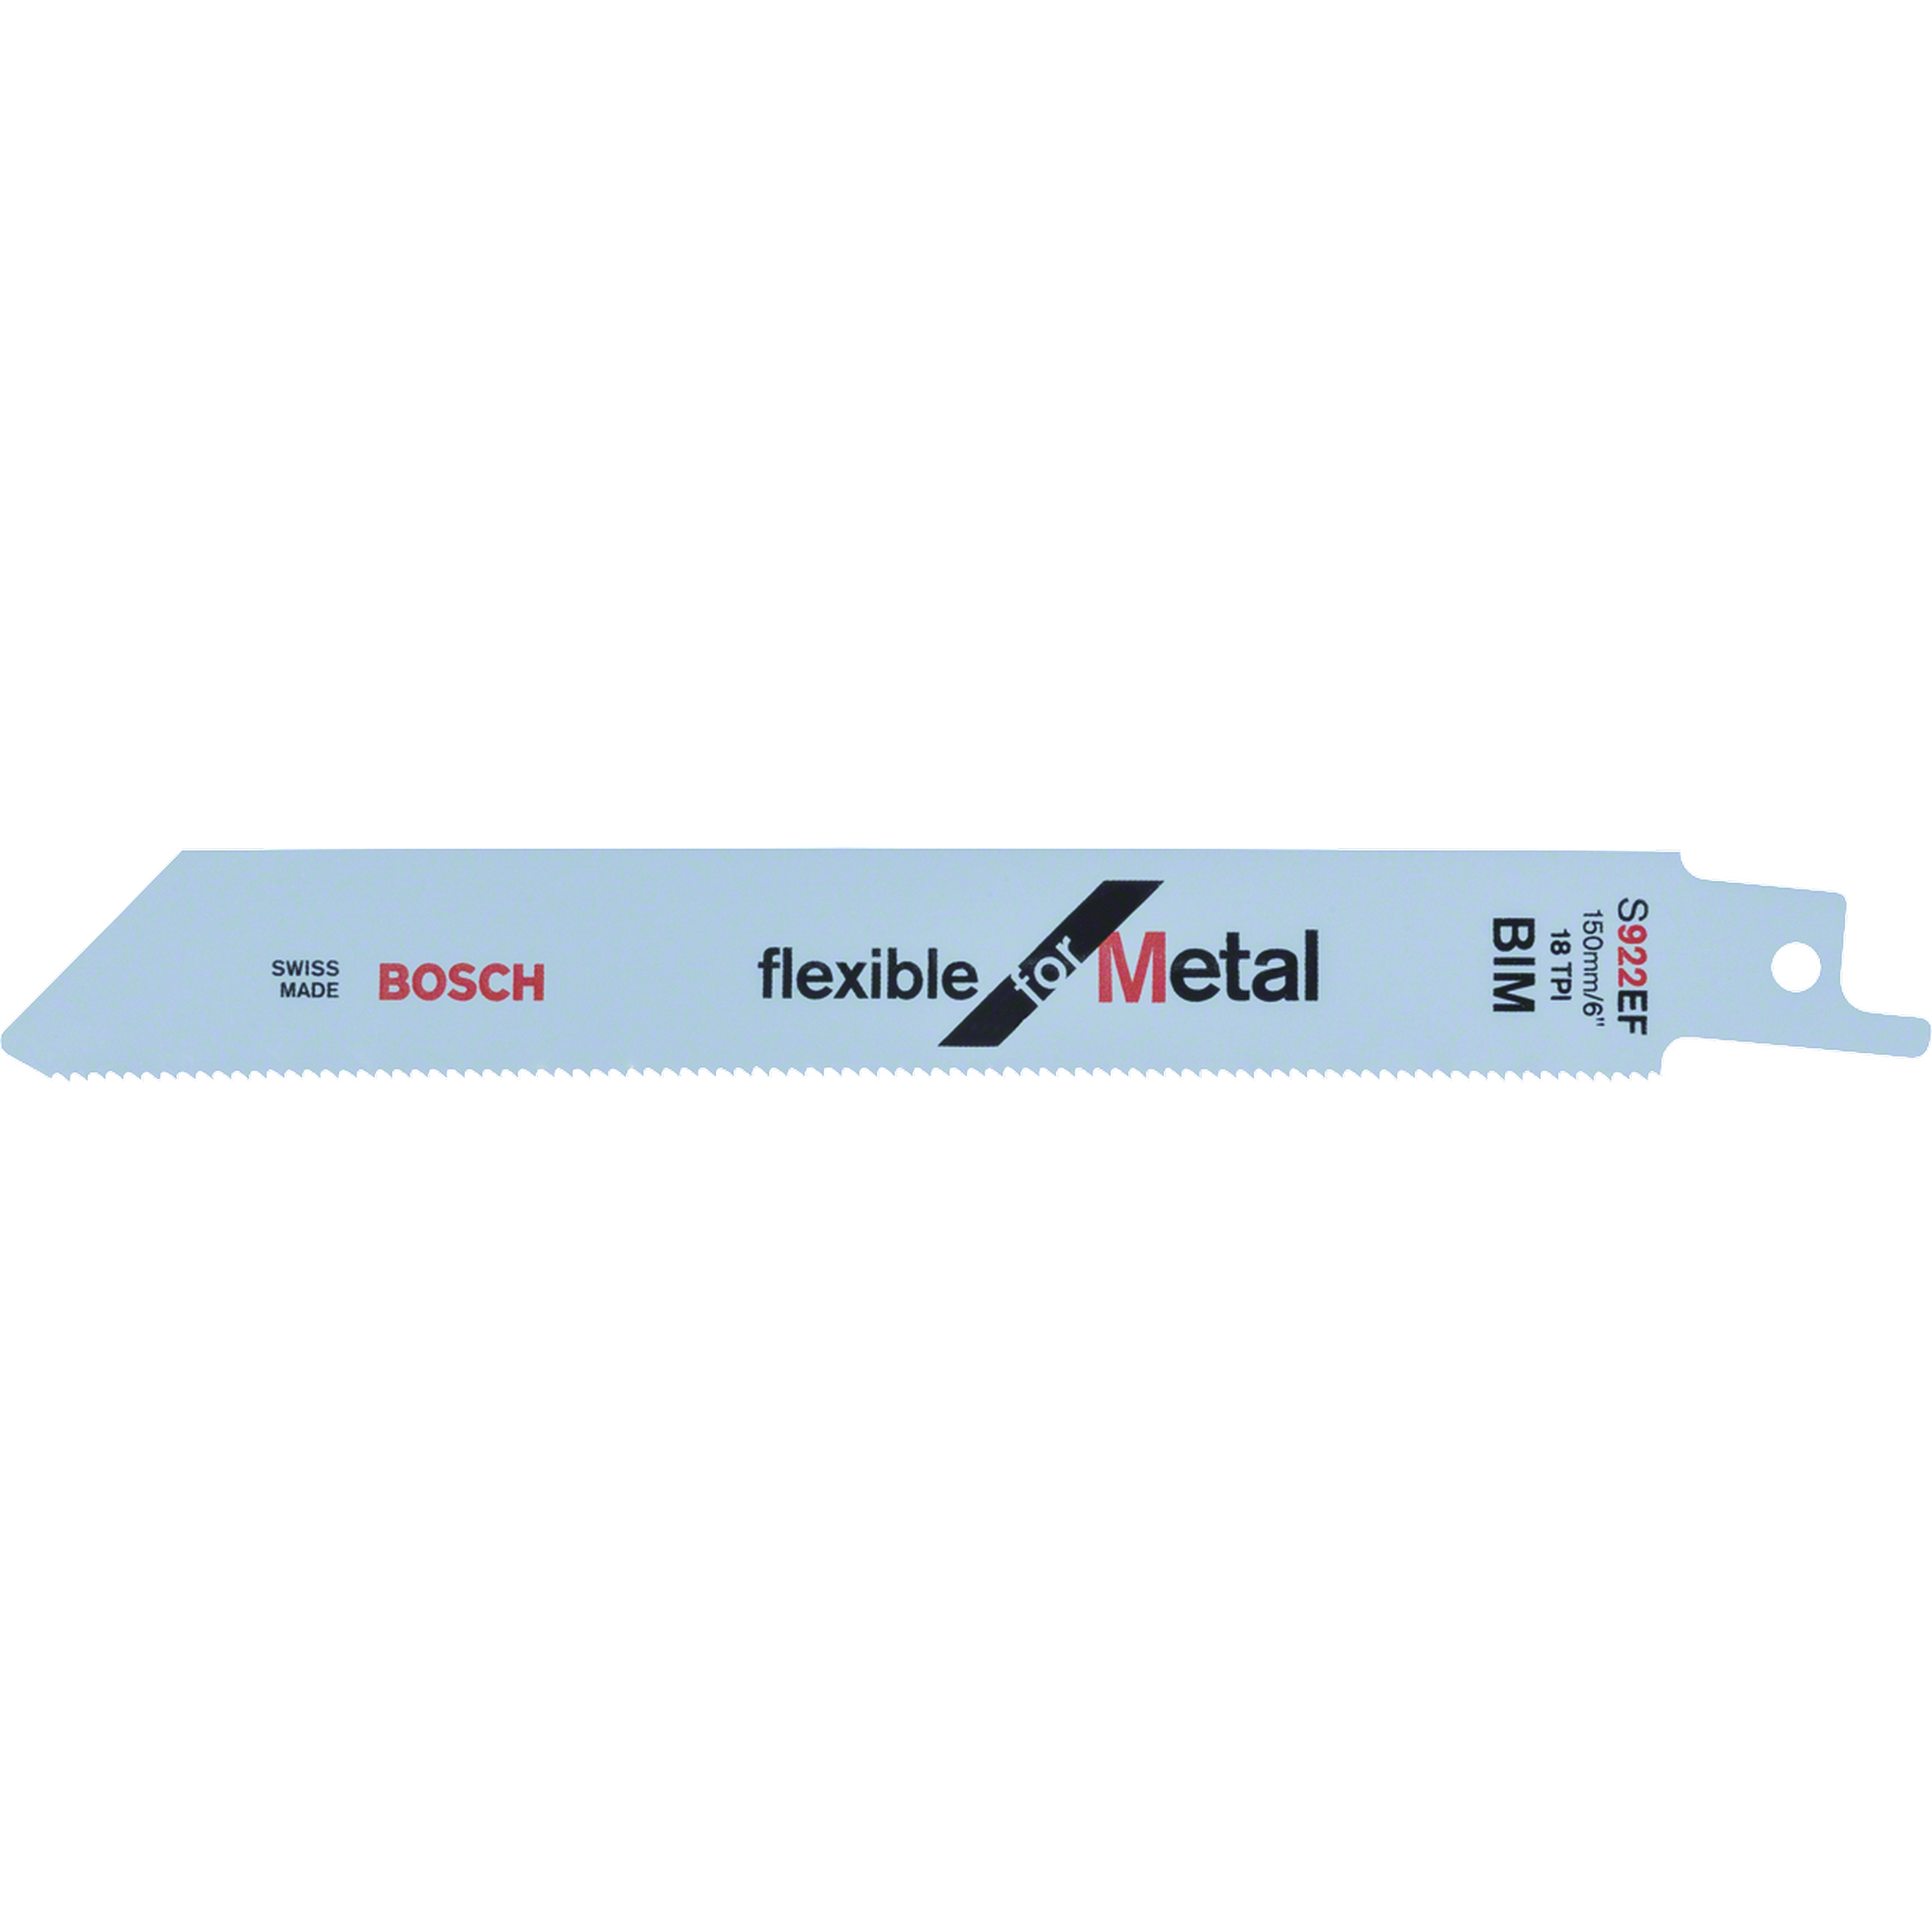 Säbelsägeblatt S 922 EF 'Flexible for Metal' 5er Pack + product picture